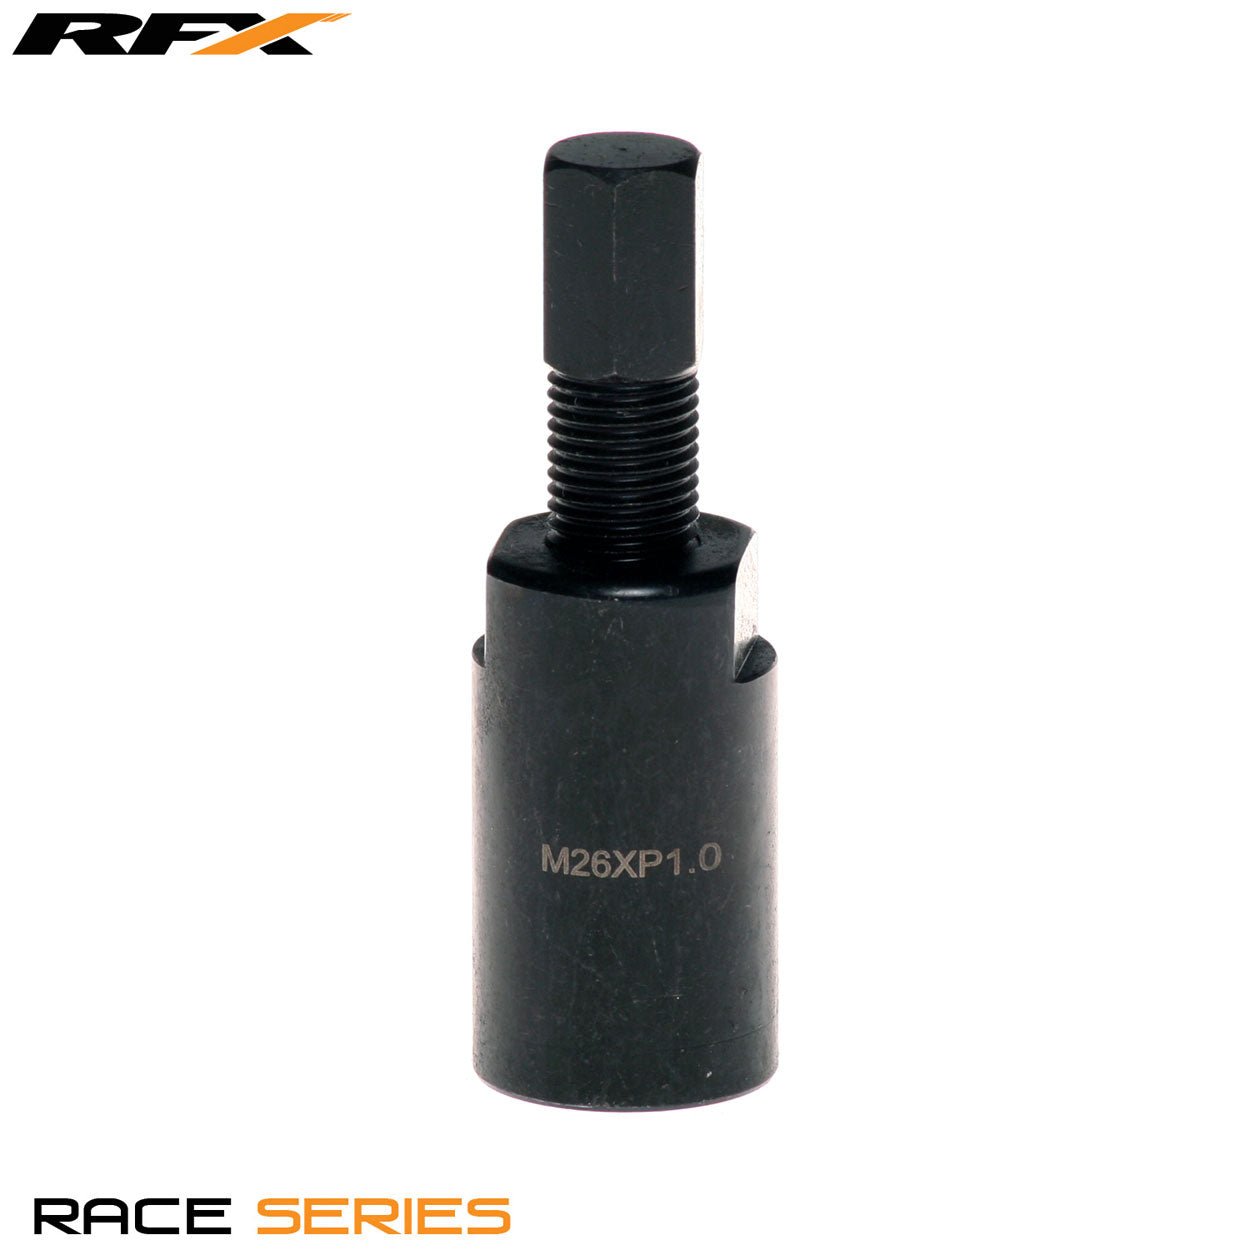 RFX Race Series Flywheel puller (Black) Internal M26xP1.0 KTM 4t All Models 00-15 - Black - RFX